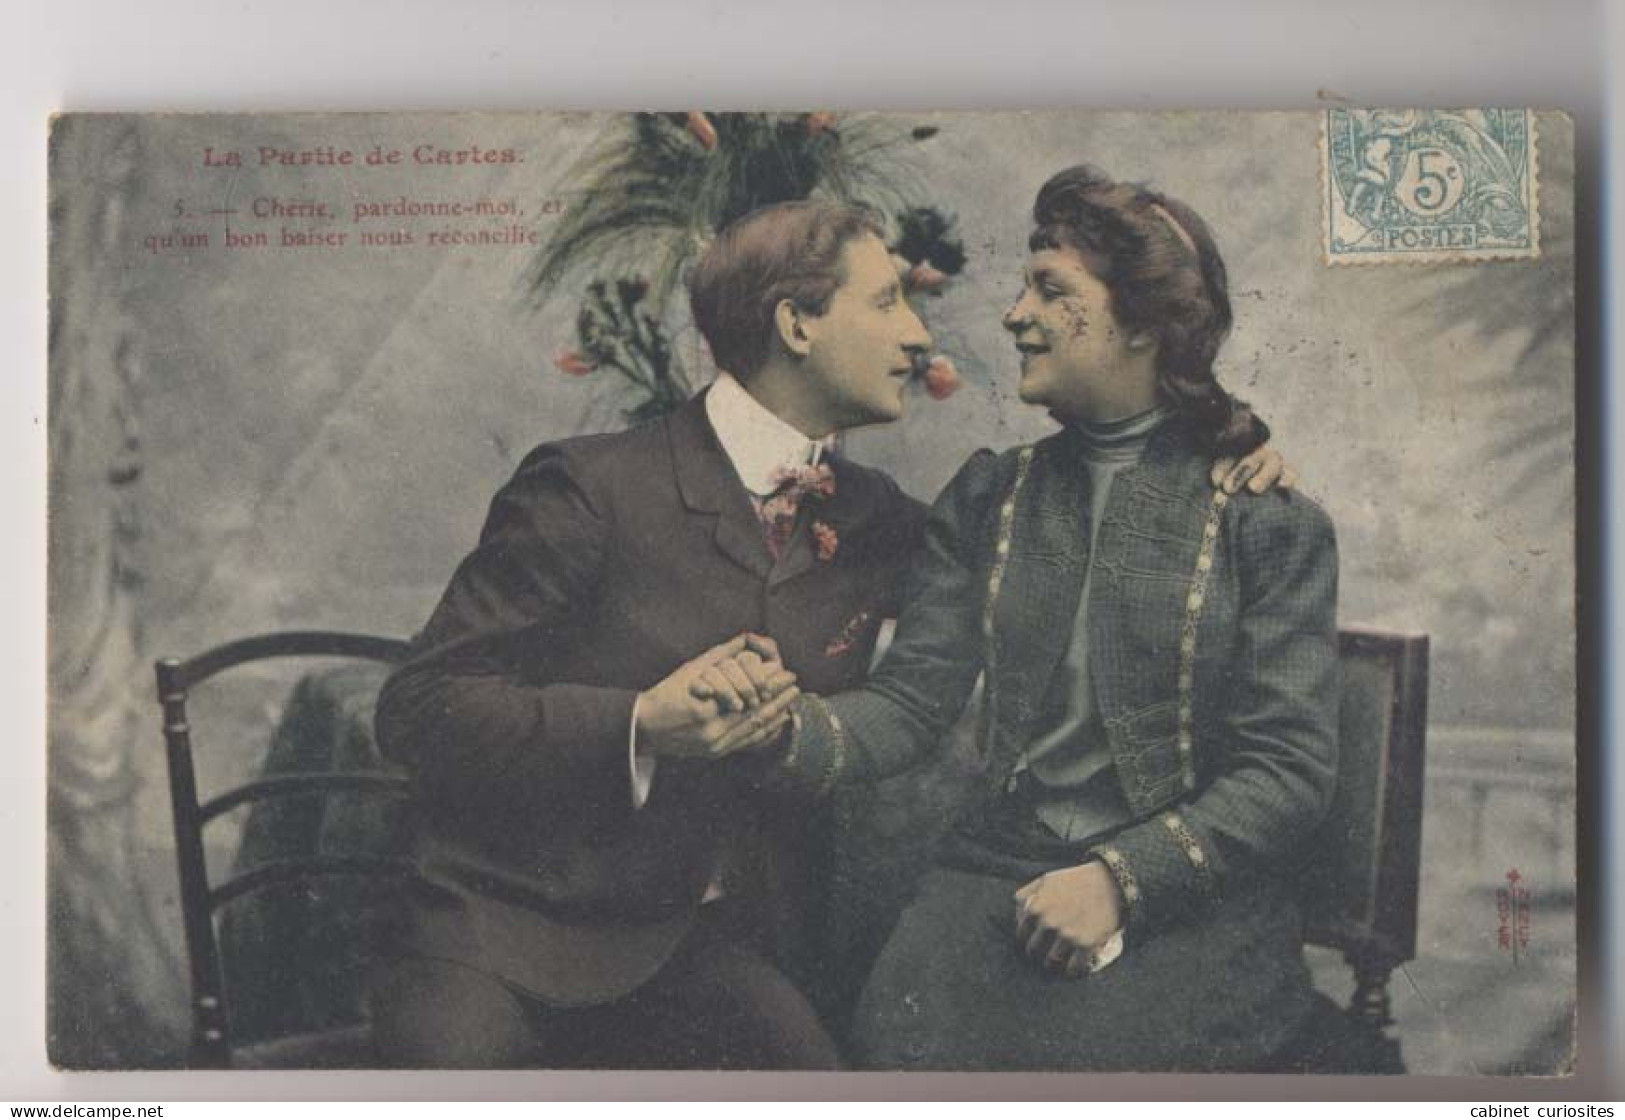 La Partie De Cartes  - 1908 - Chérie Pardonne Moi - Colorisée - Animée - Cartes à Jouer - Playing Cards